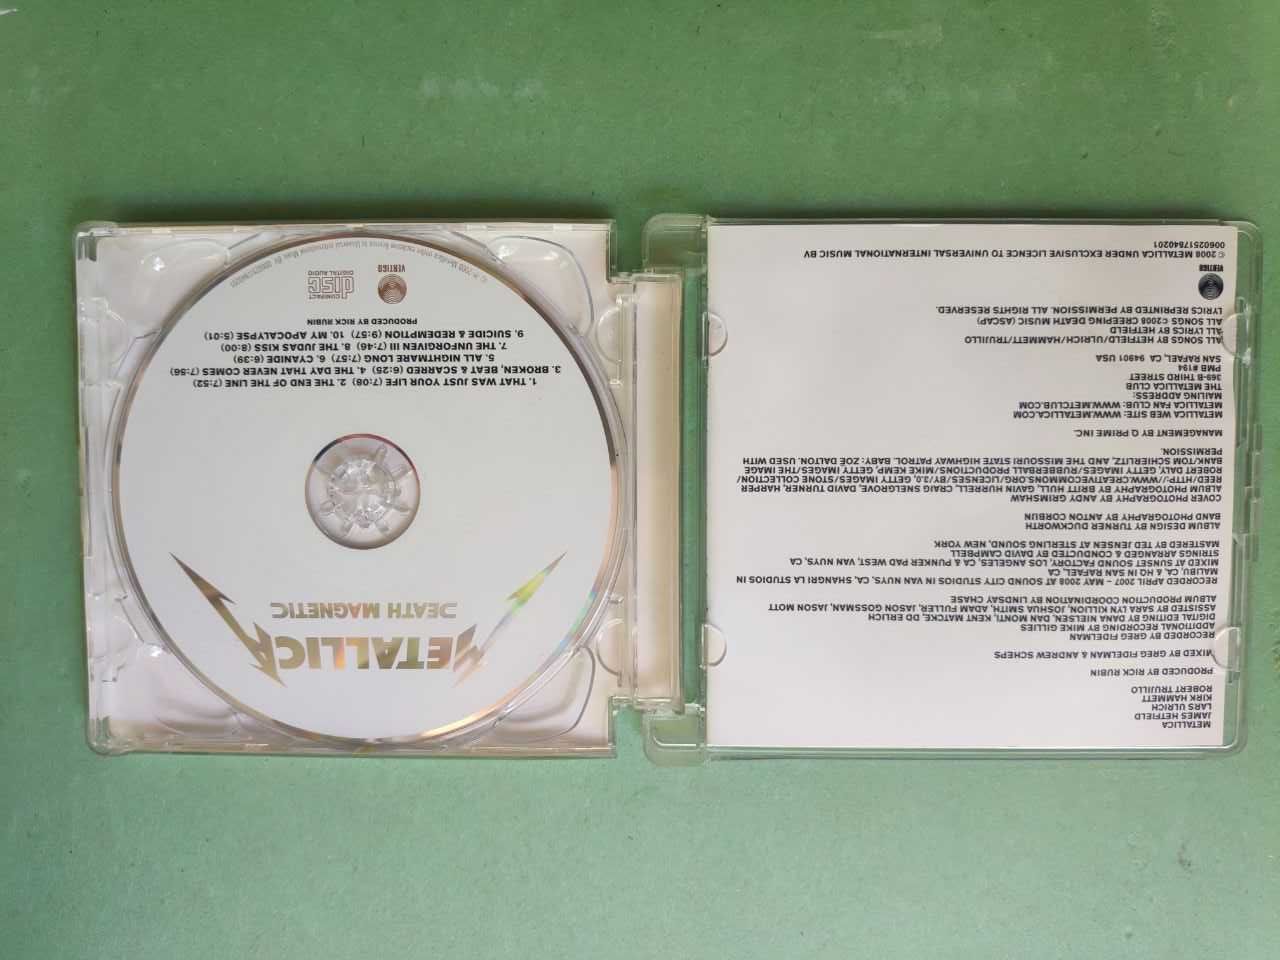 Продаются CD диски Metallica, Retro-90 и др.